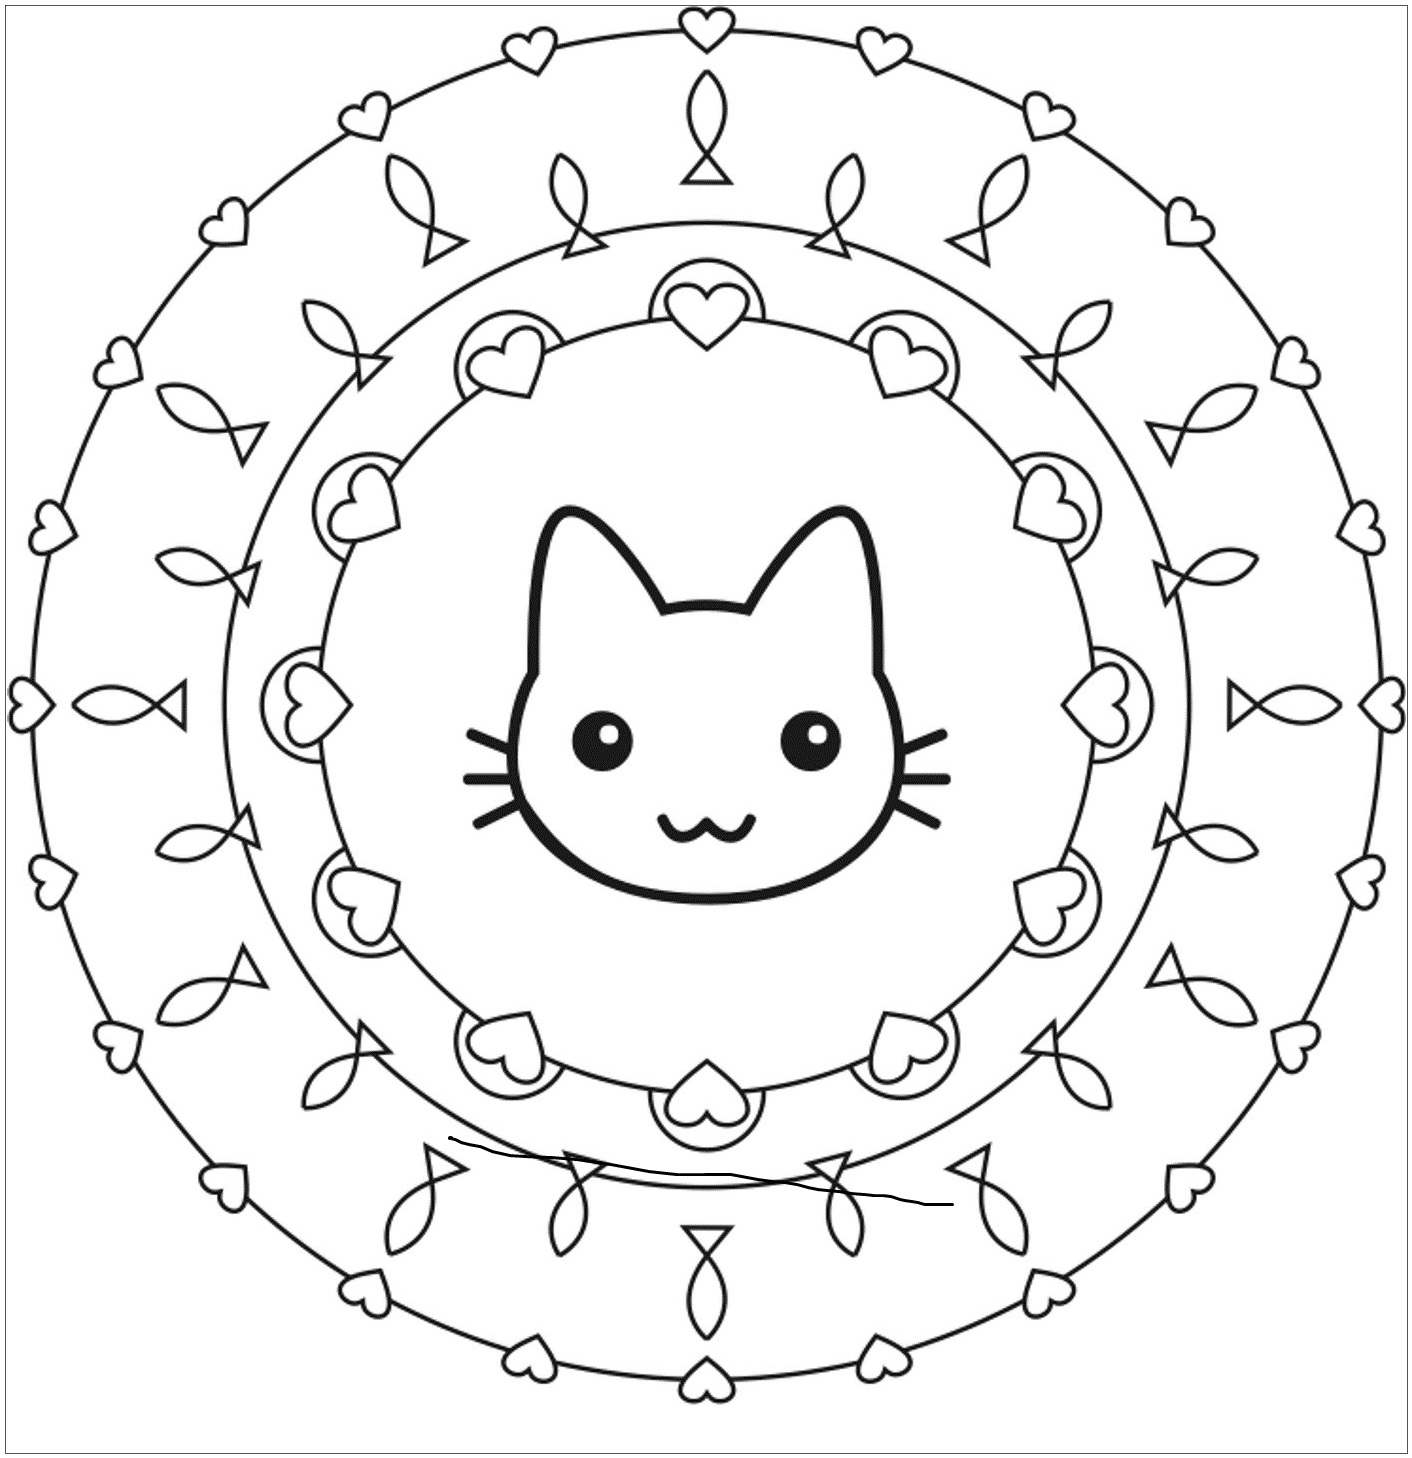 Cat Mandala